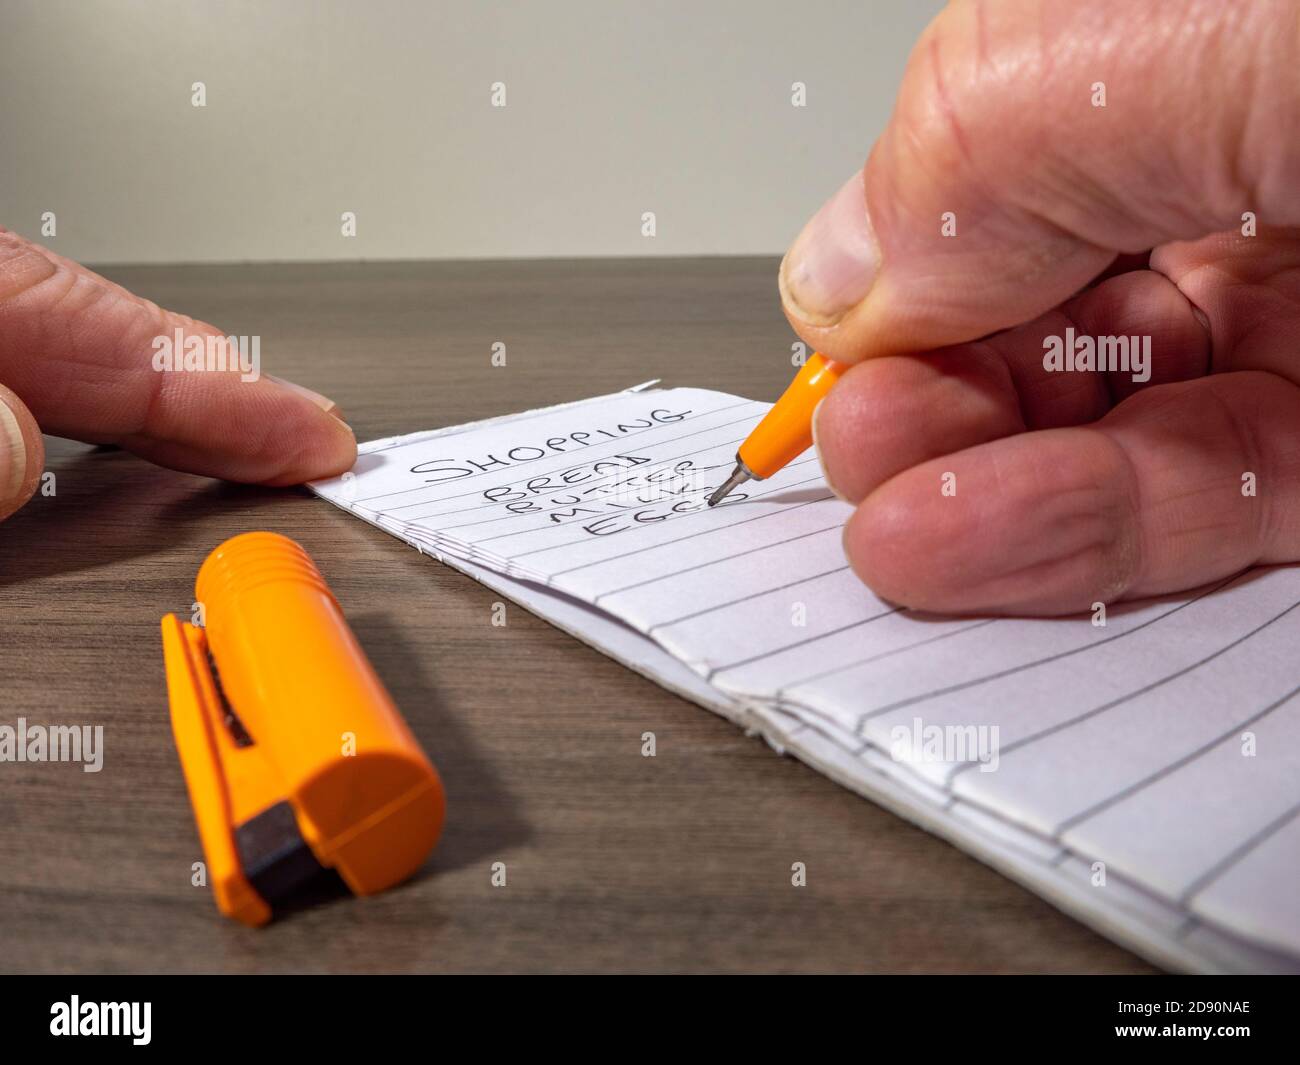 Nahaufnahme eines Mannes mit der Hand, der einen orangefarbenen Filzstift hält und eine Einkaufsliste auf einem linierten Notizblock auf einem Schreibtisch schreibt. Stockfoto